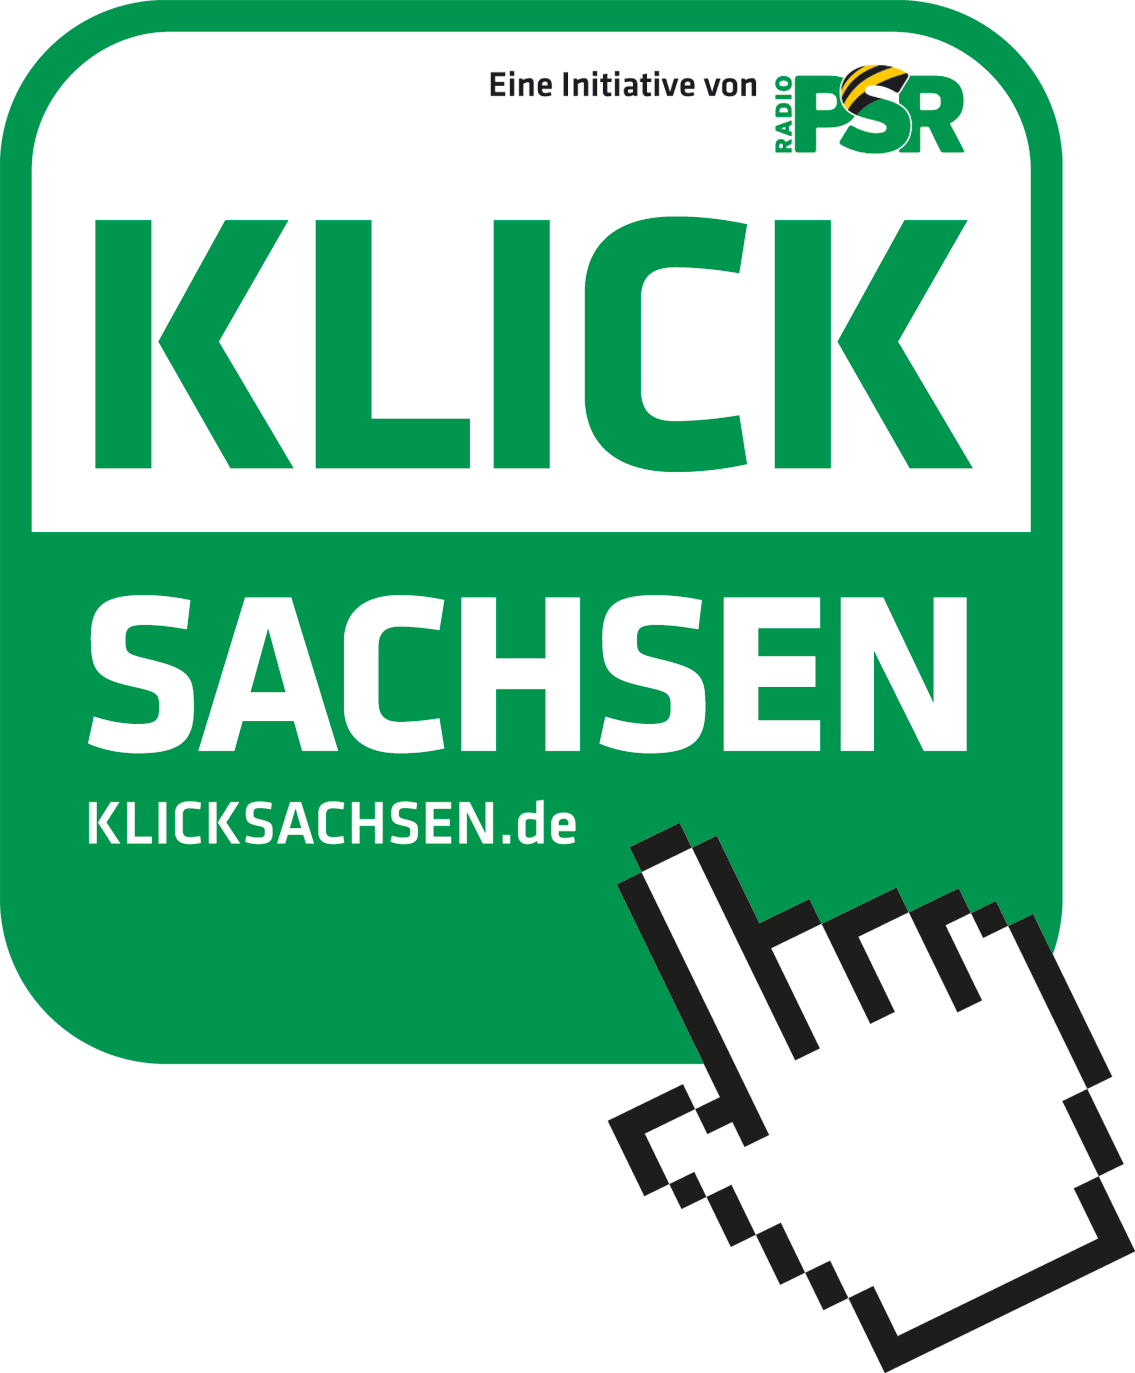 Klicksachsen.de